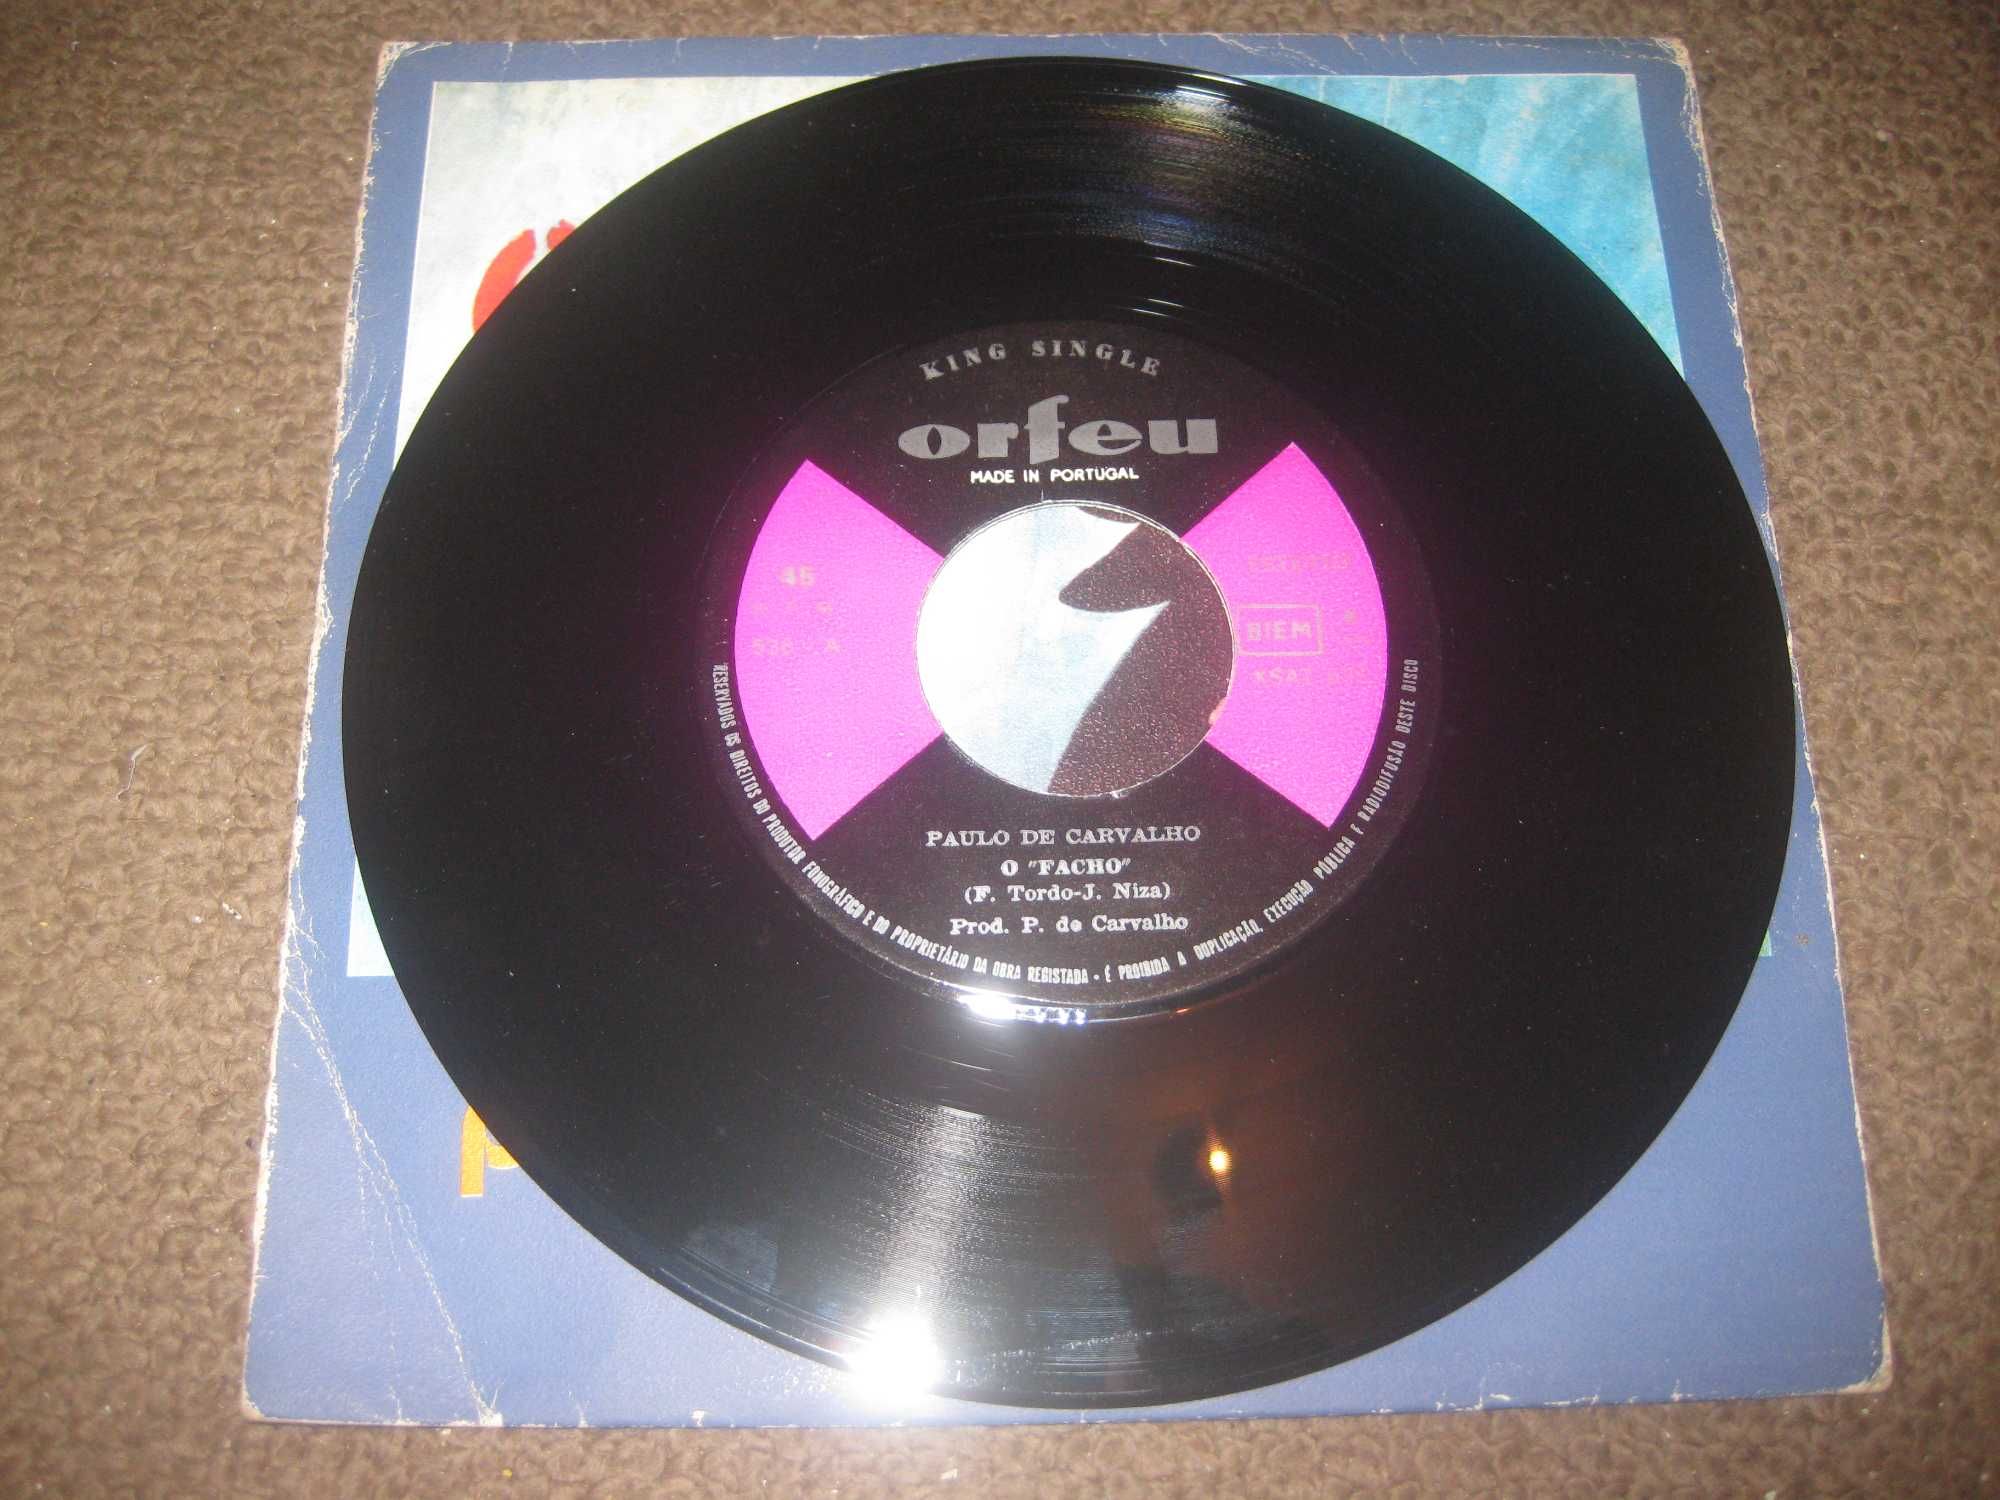 Vinil Single 45 rpm do Paulo de Carvalho "O Facho"